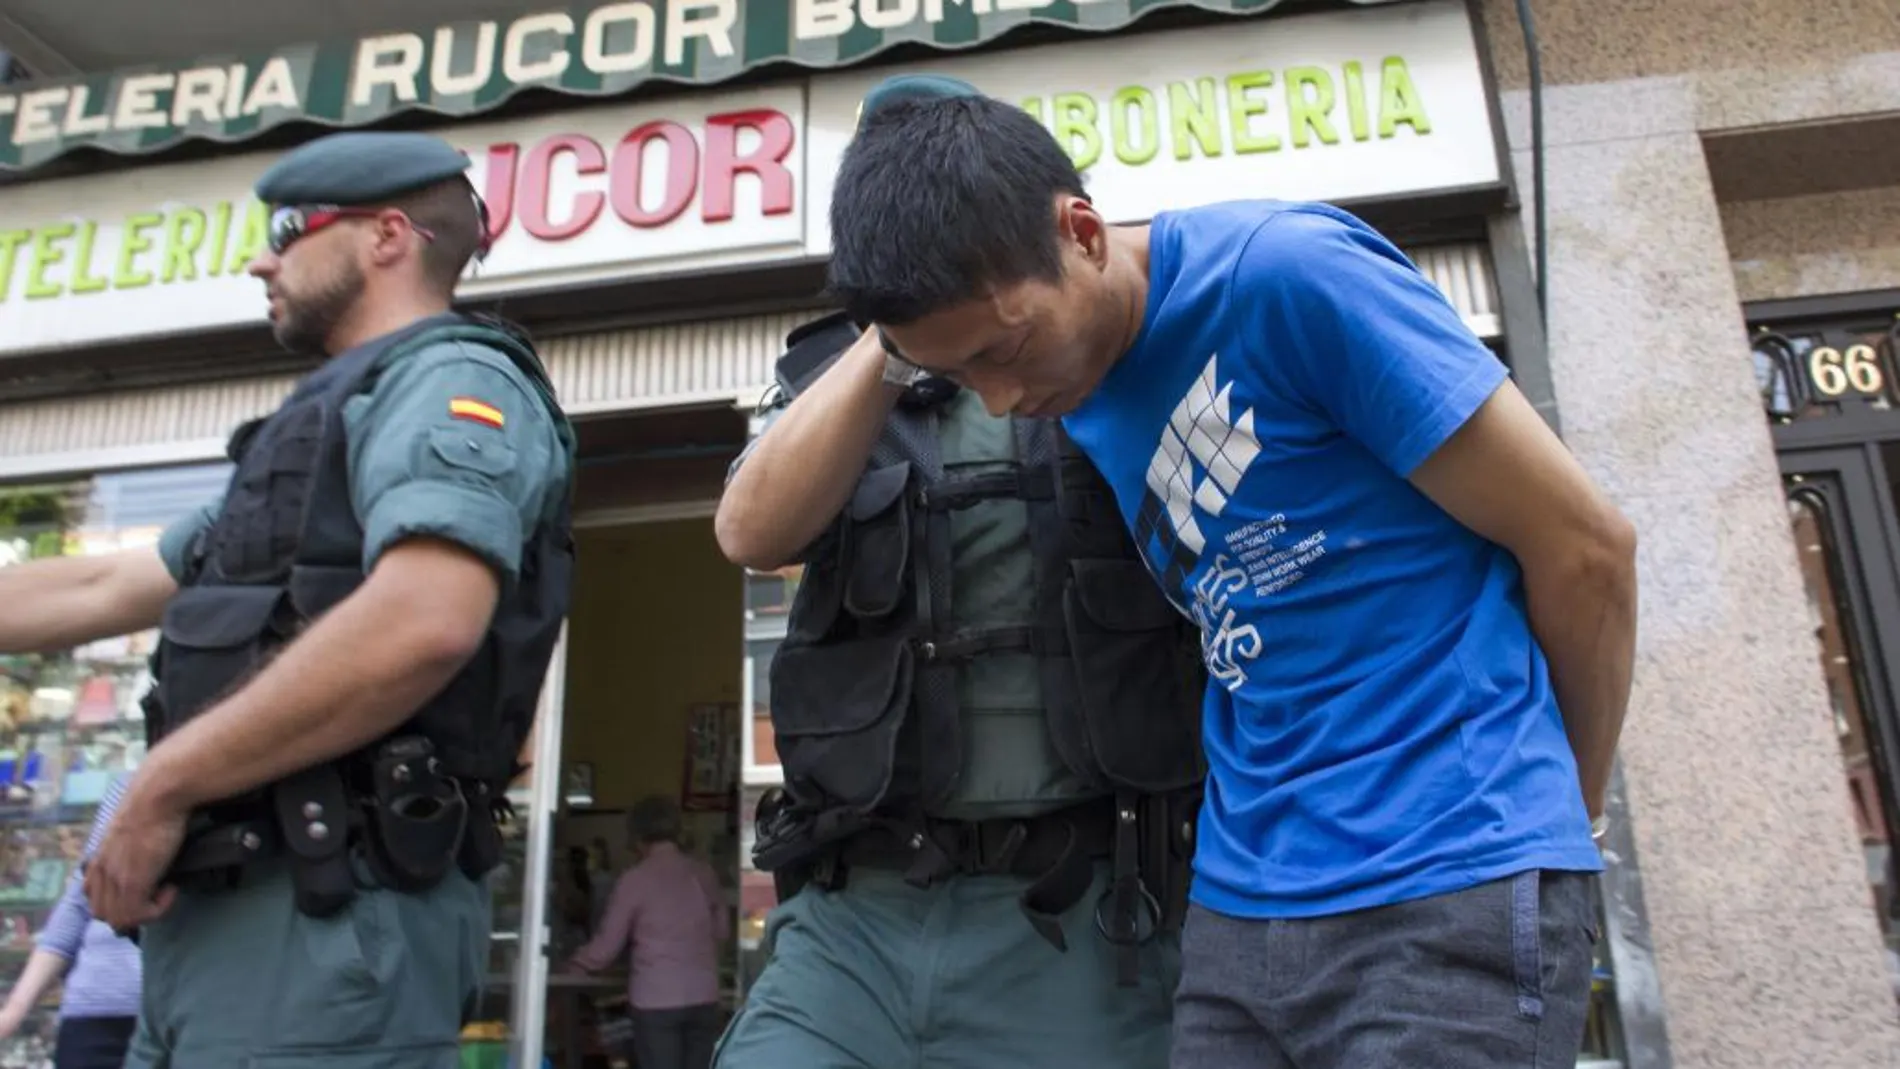 Al menos otro ciudadano chino ha sido detenido tras un registro en Vallecias